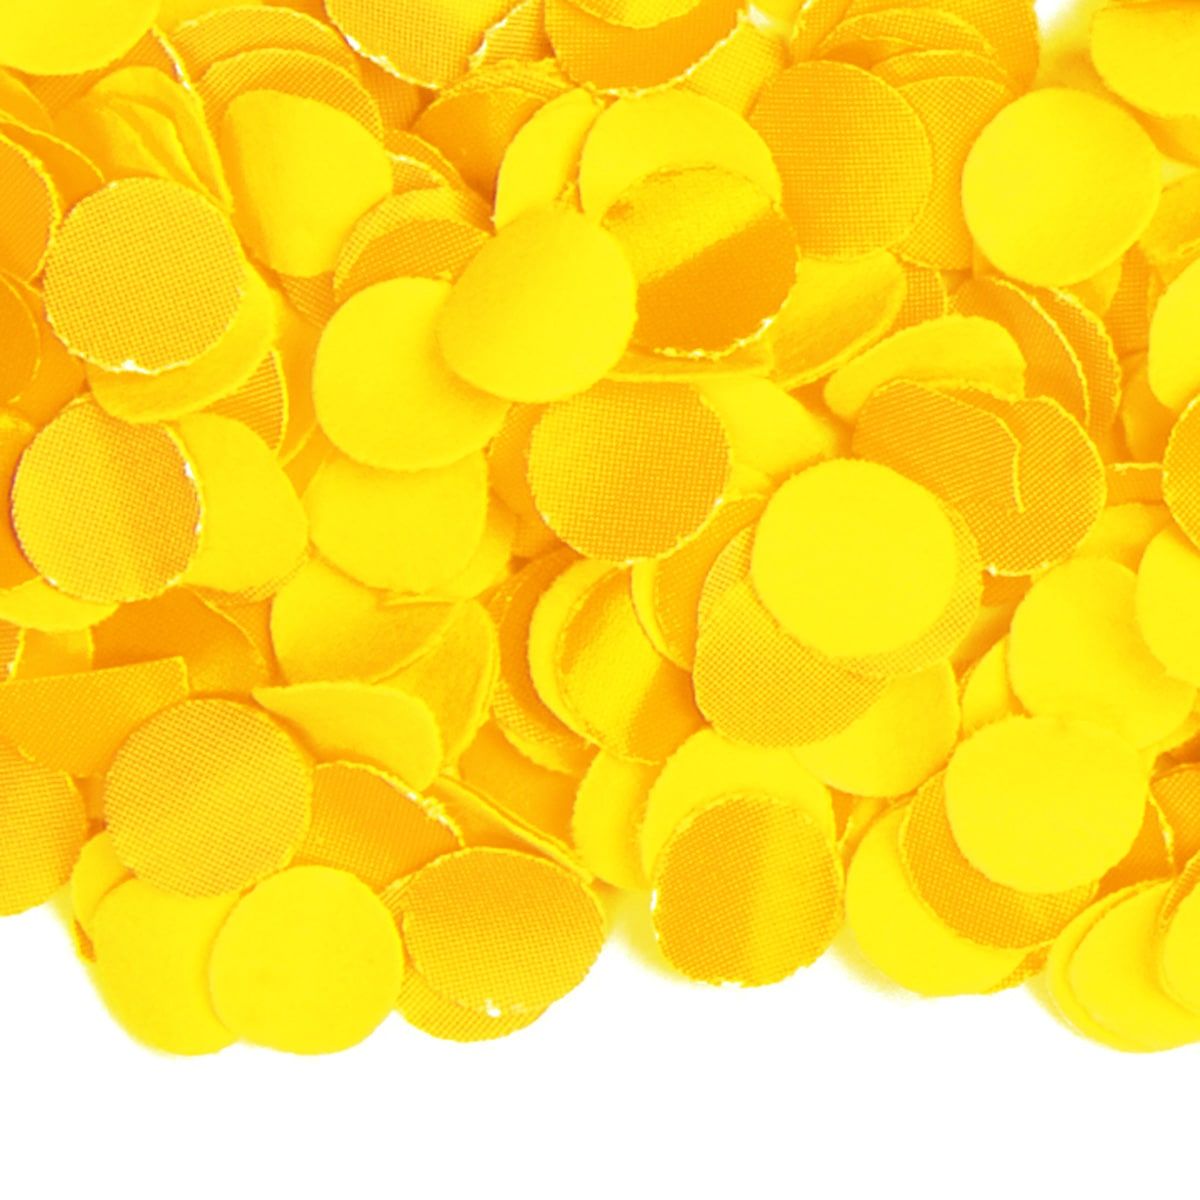 Confetti geel 1 kilo